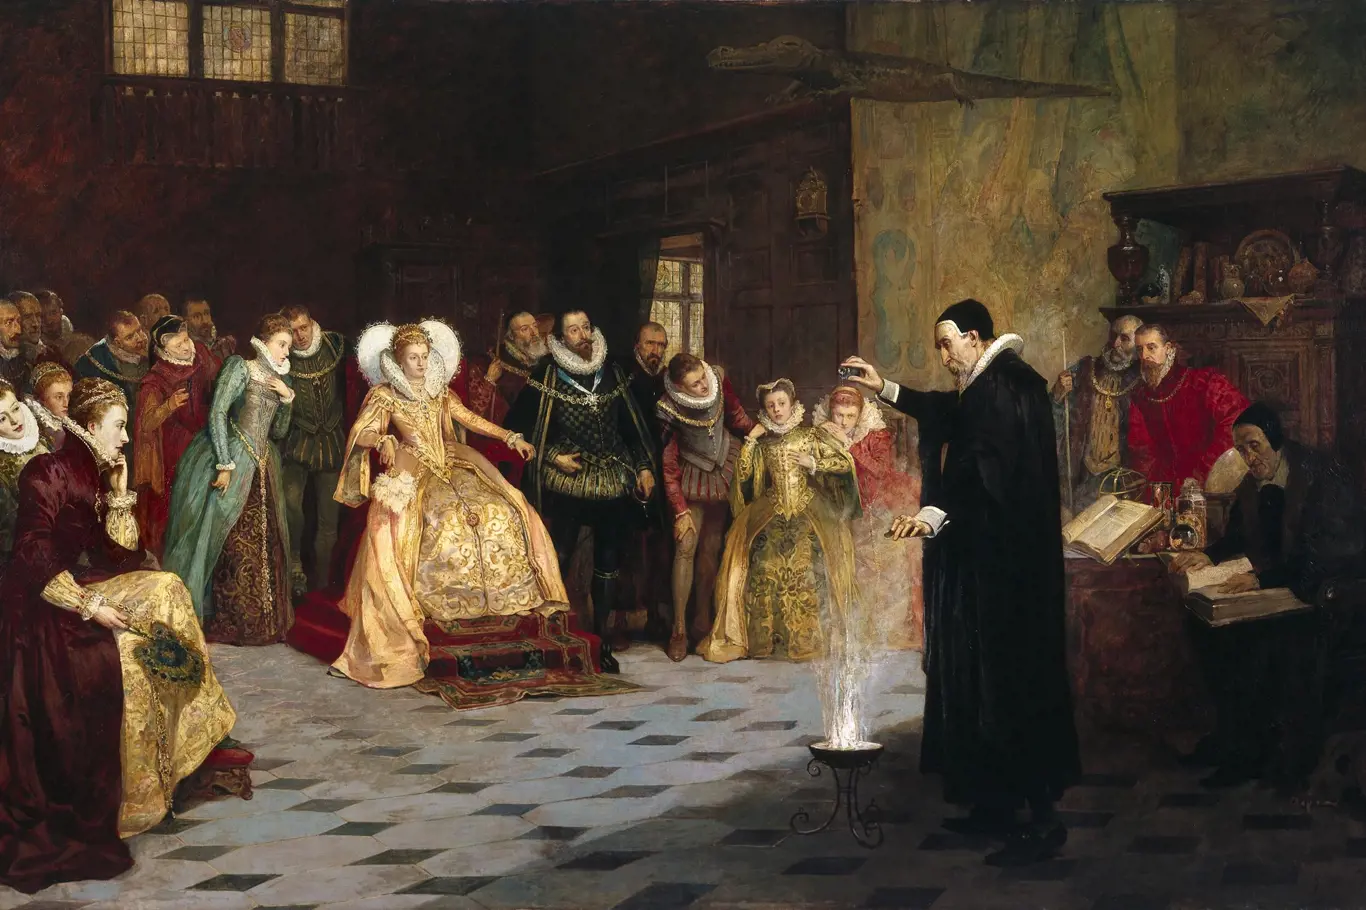 Glindoniho John Dee provádí experiment před královnou Alžbětou I.